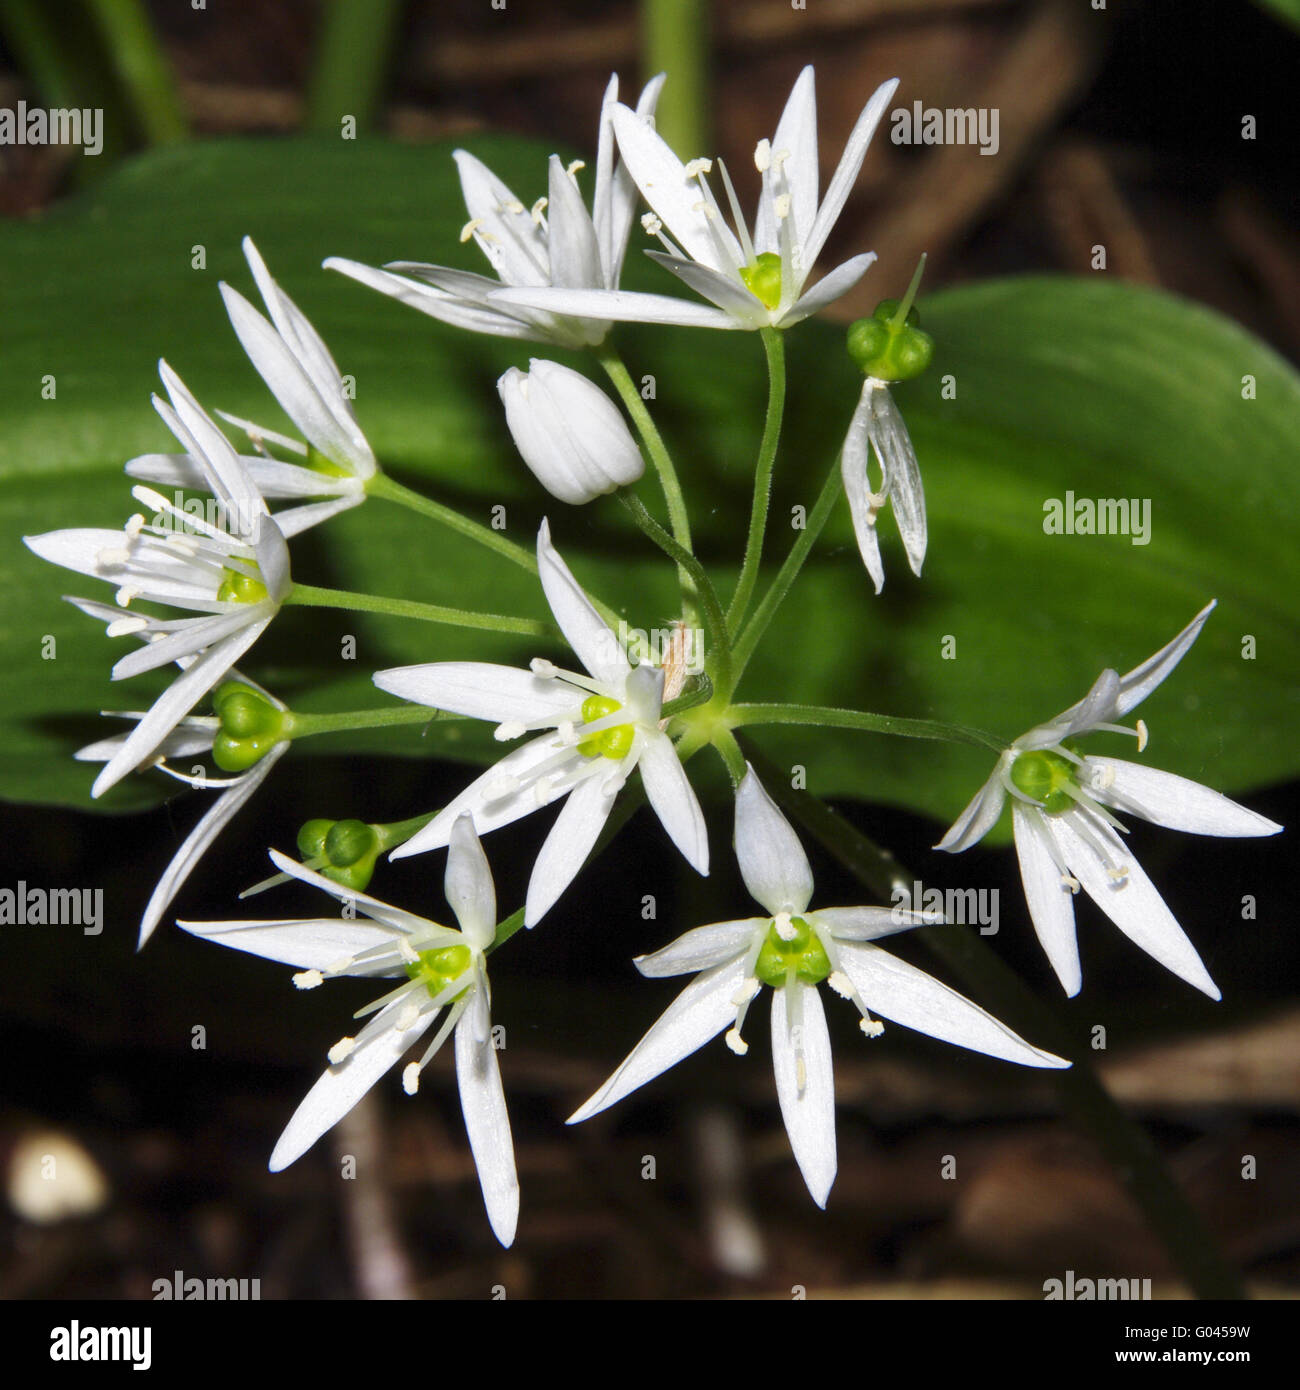 Allium ursinum / ramsons Stock Photo